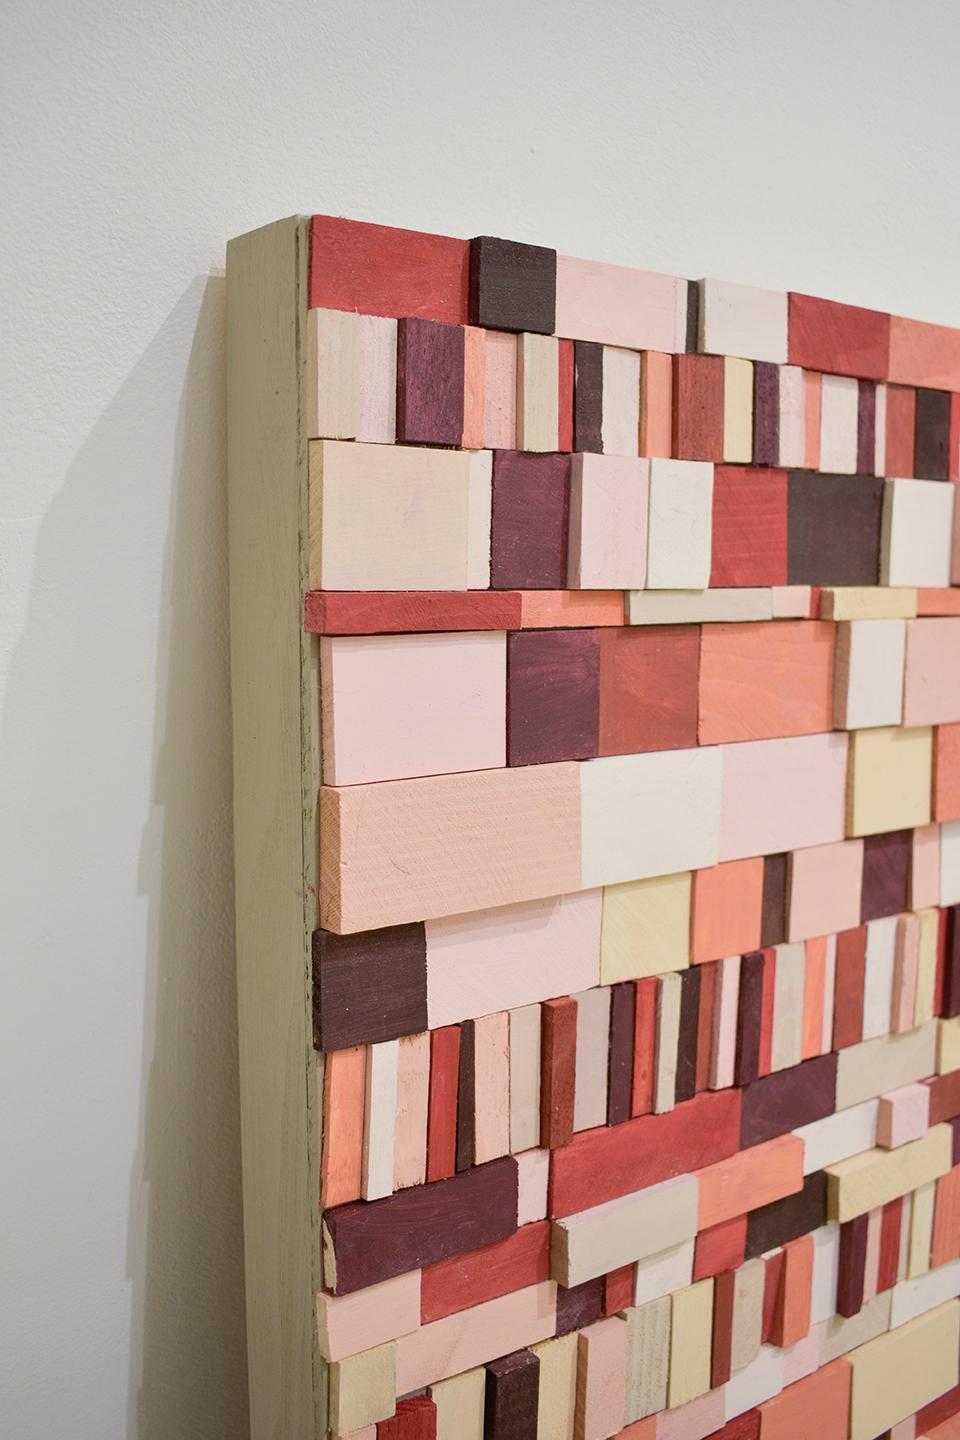 Piquant: Abstrakte geometrische 3D-Holz-Wandskulptur in Rot, Rosa, Pfirsich, Maroon (Geometrische Abstraktion), Sculpture, von Stephen Walling